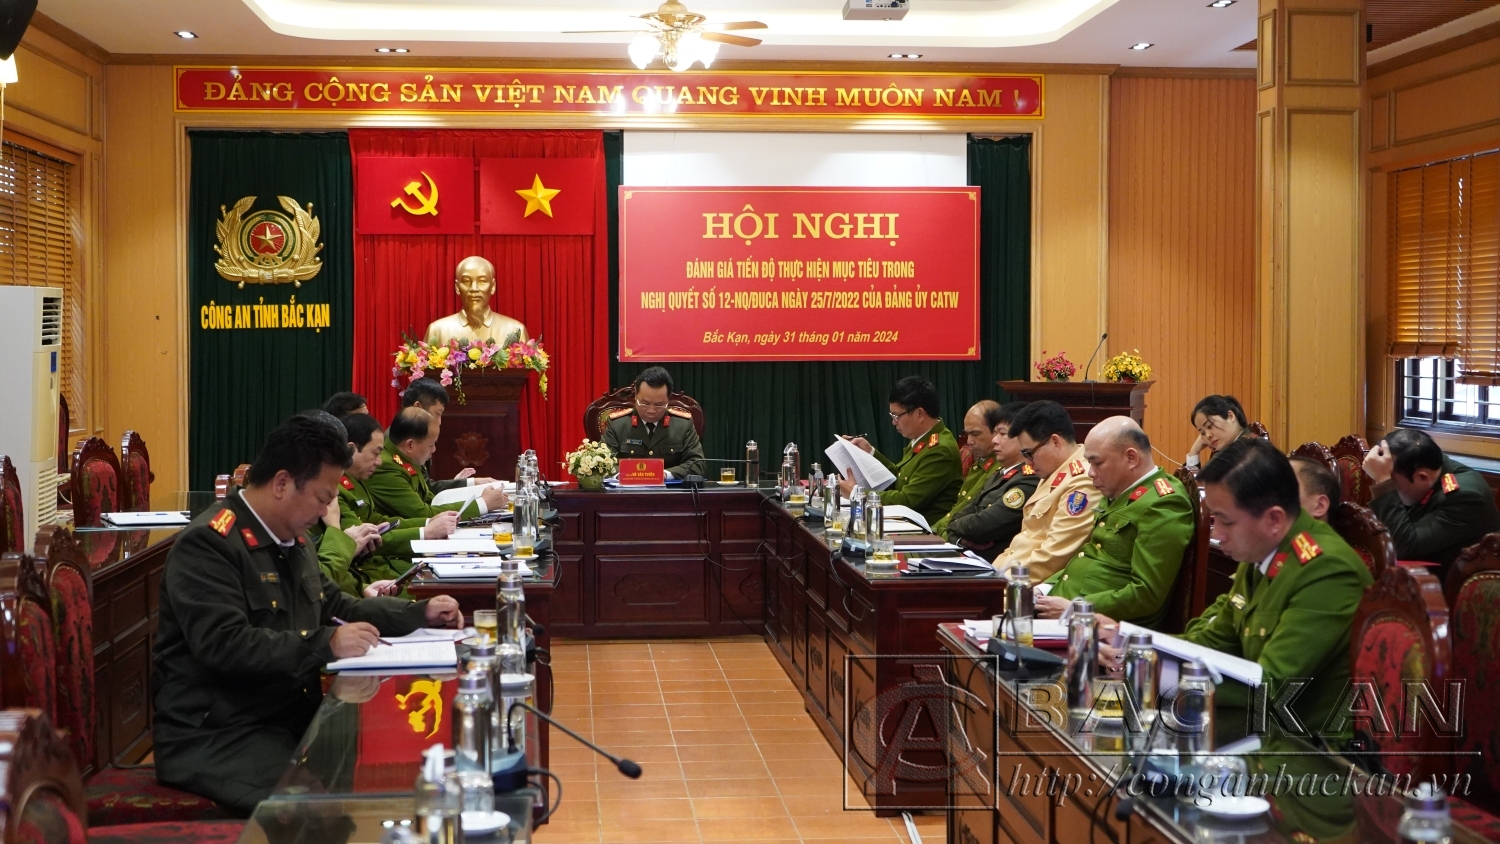 Đại tá Hà Văn Tuyên – Giám đốc Công an tỉnh chủ trì hội nghị tại điểm cầu Công an tỉnh Bắc Kạn